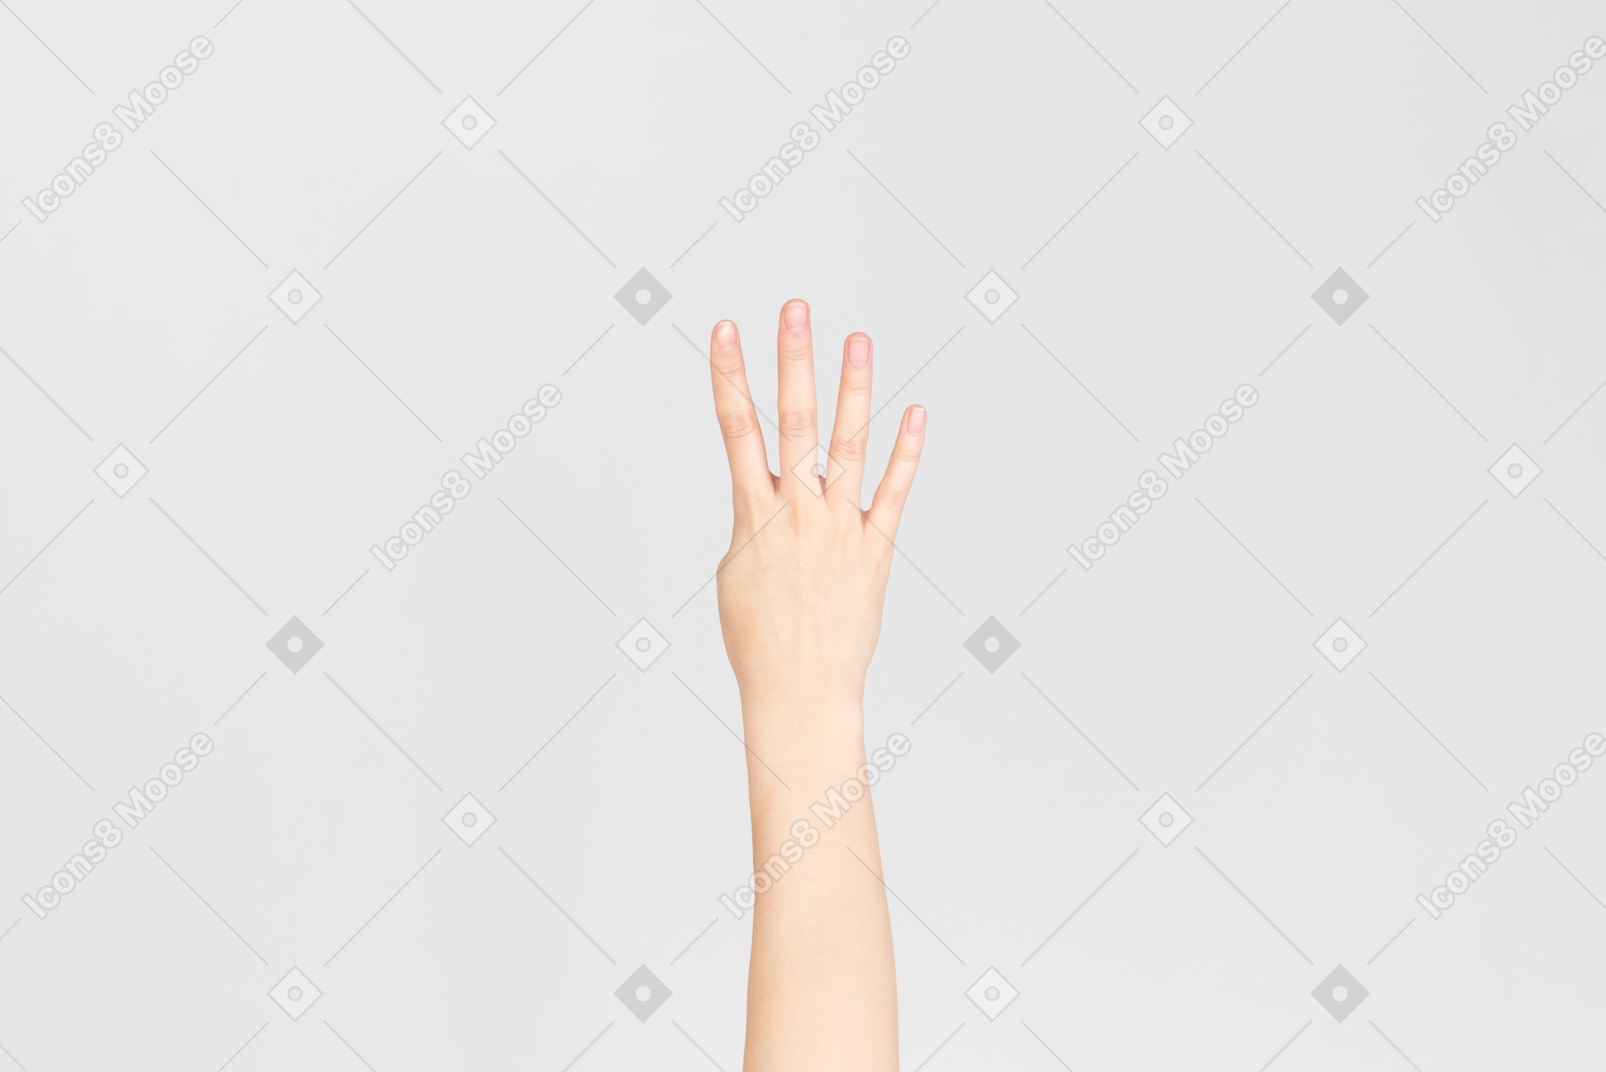 4本の指を示す女性の手